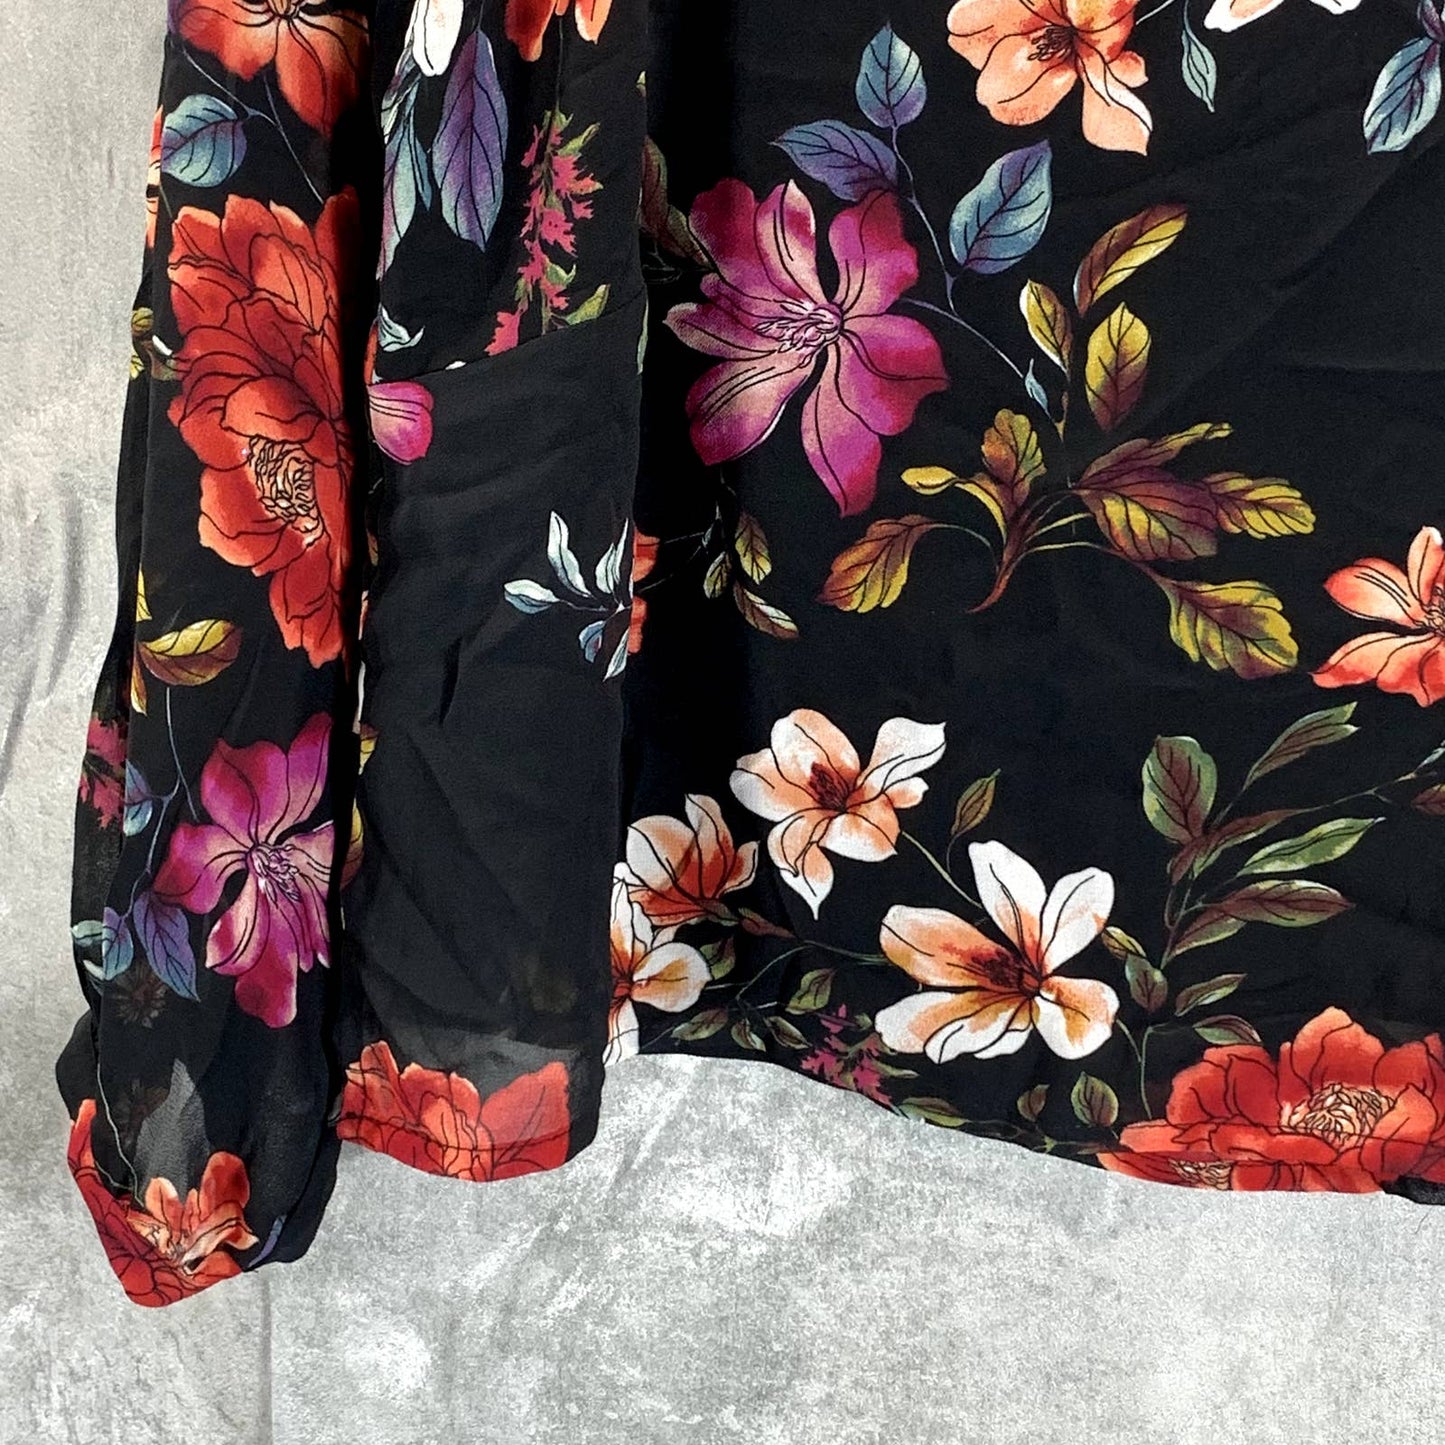 VINC CAMUTO Women's Rich Black Floral-Print Scoop-Neck Long-Sleeve Top SZ XS